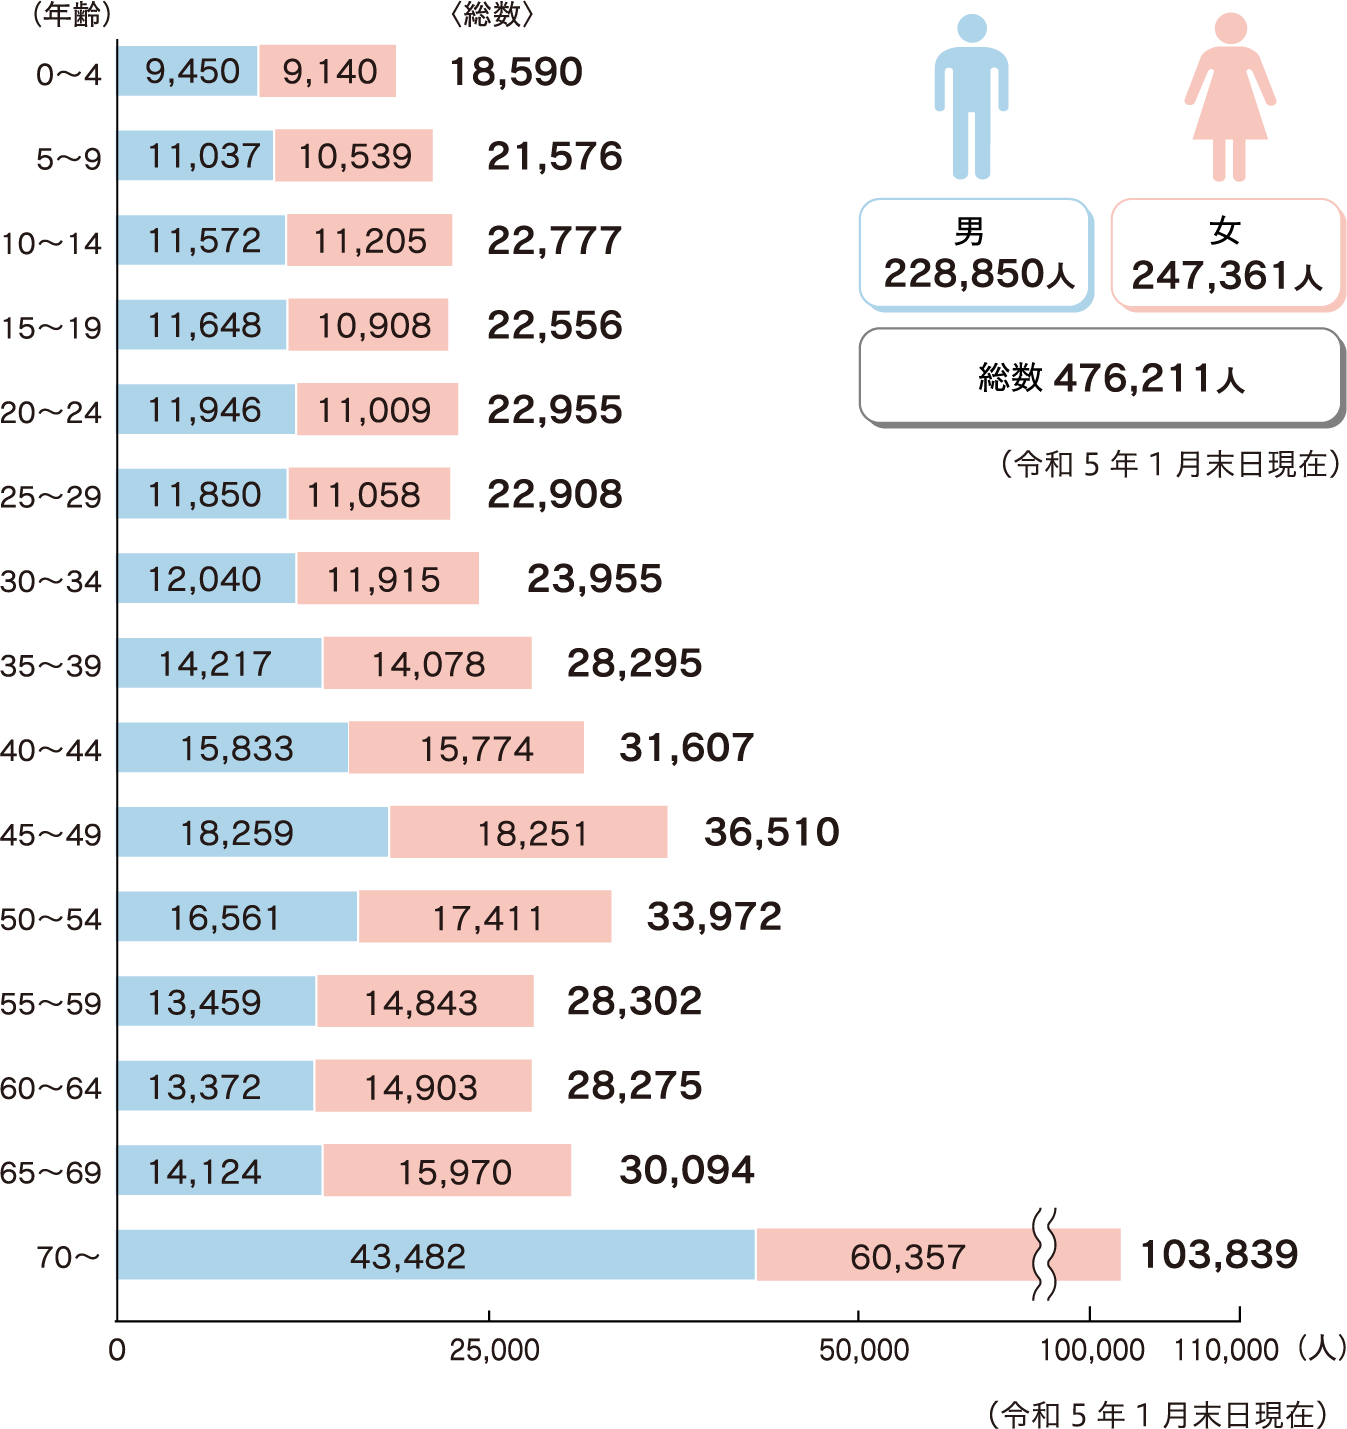 年齢5階級別人口図